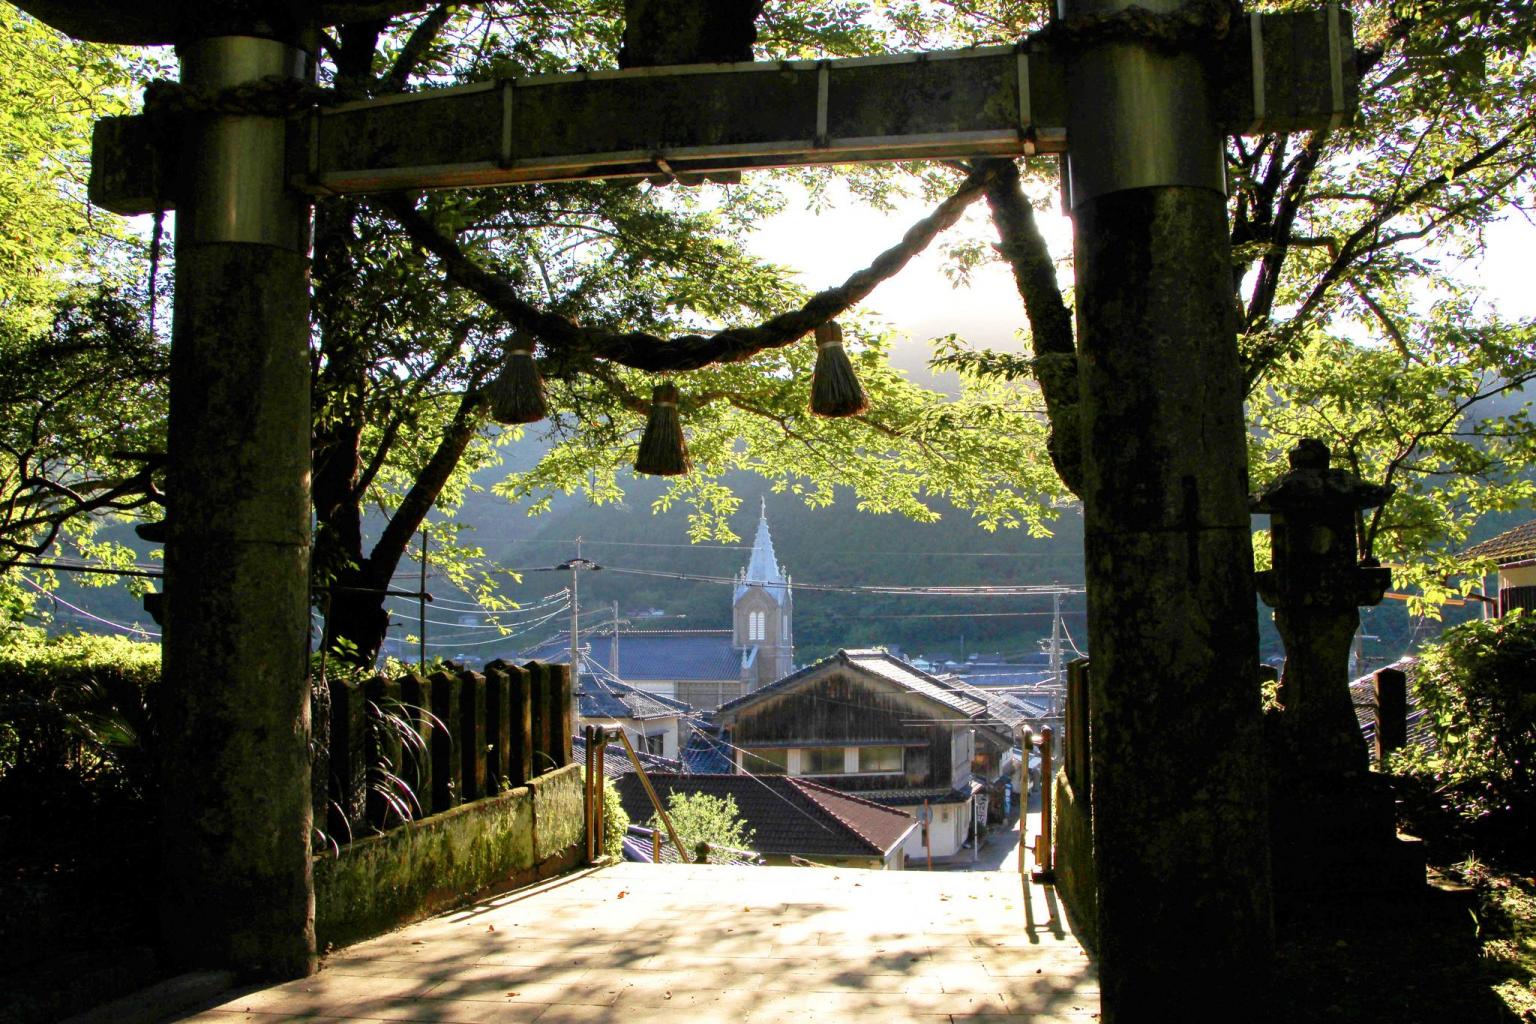 﨑津諏訪神社